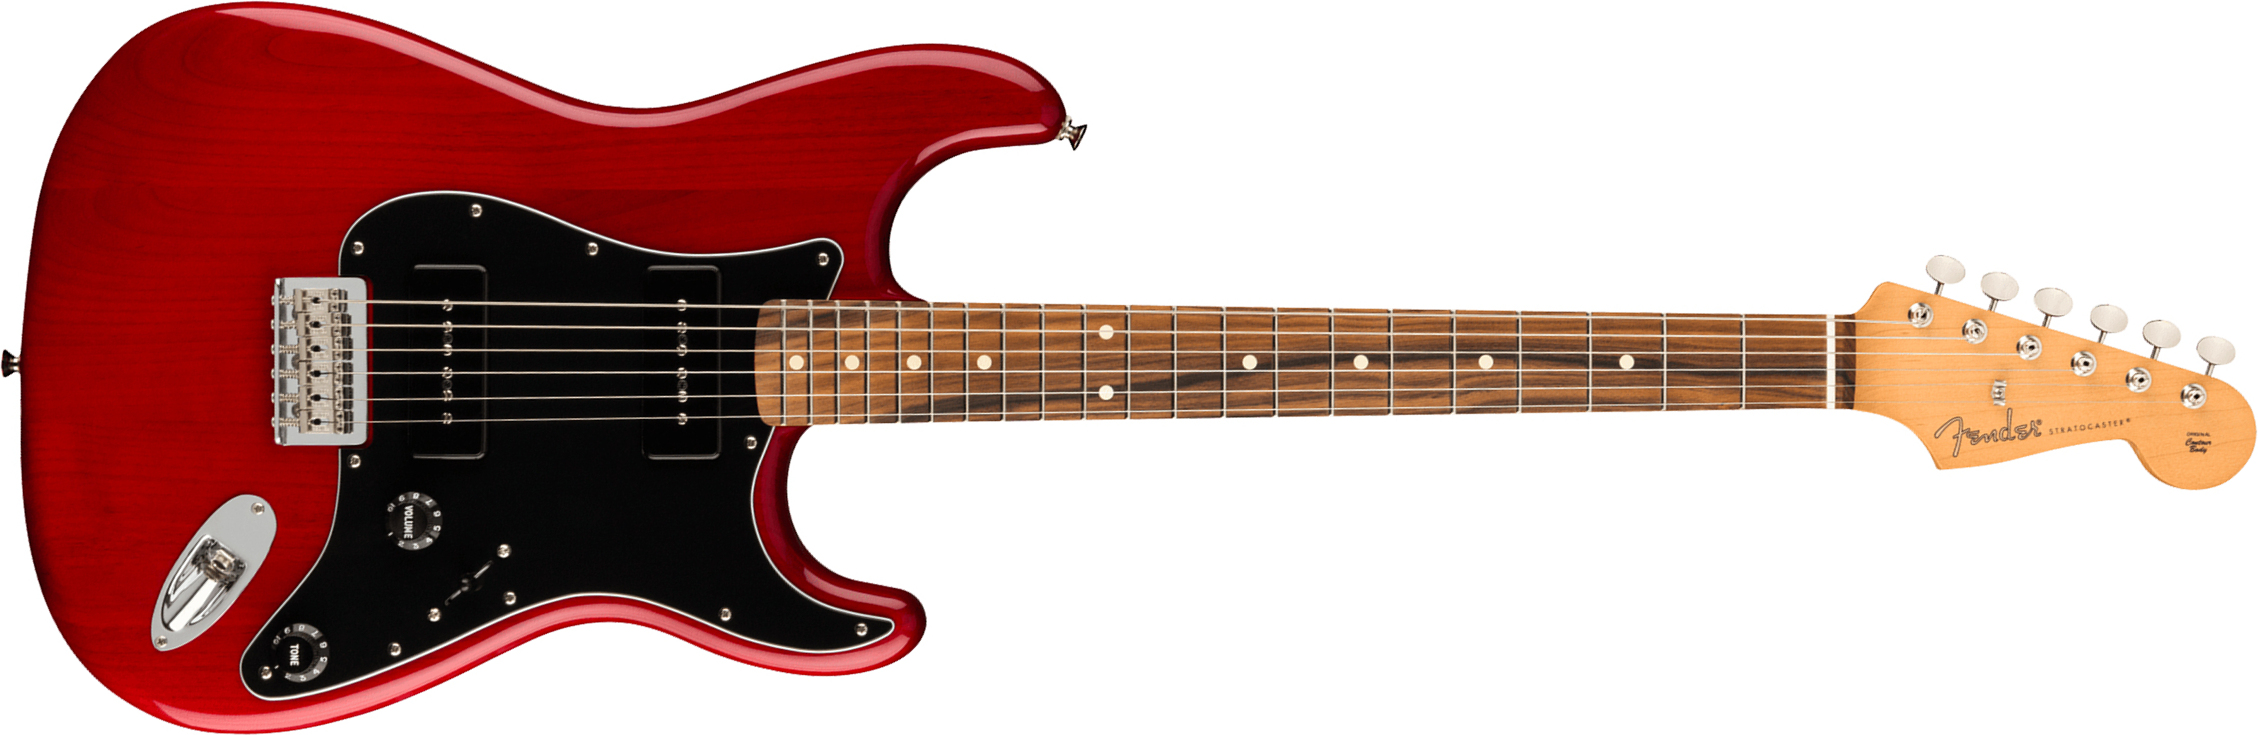 Fender Strat Noventa Mex Ss Ht Pf +housse - Crimson Red Transparent - Elektrische gitaar in Str-vorm - Main picture